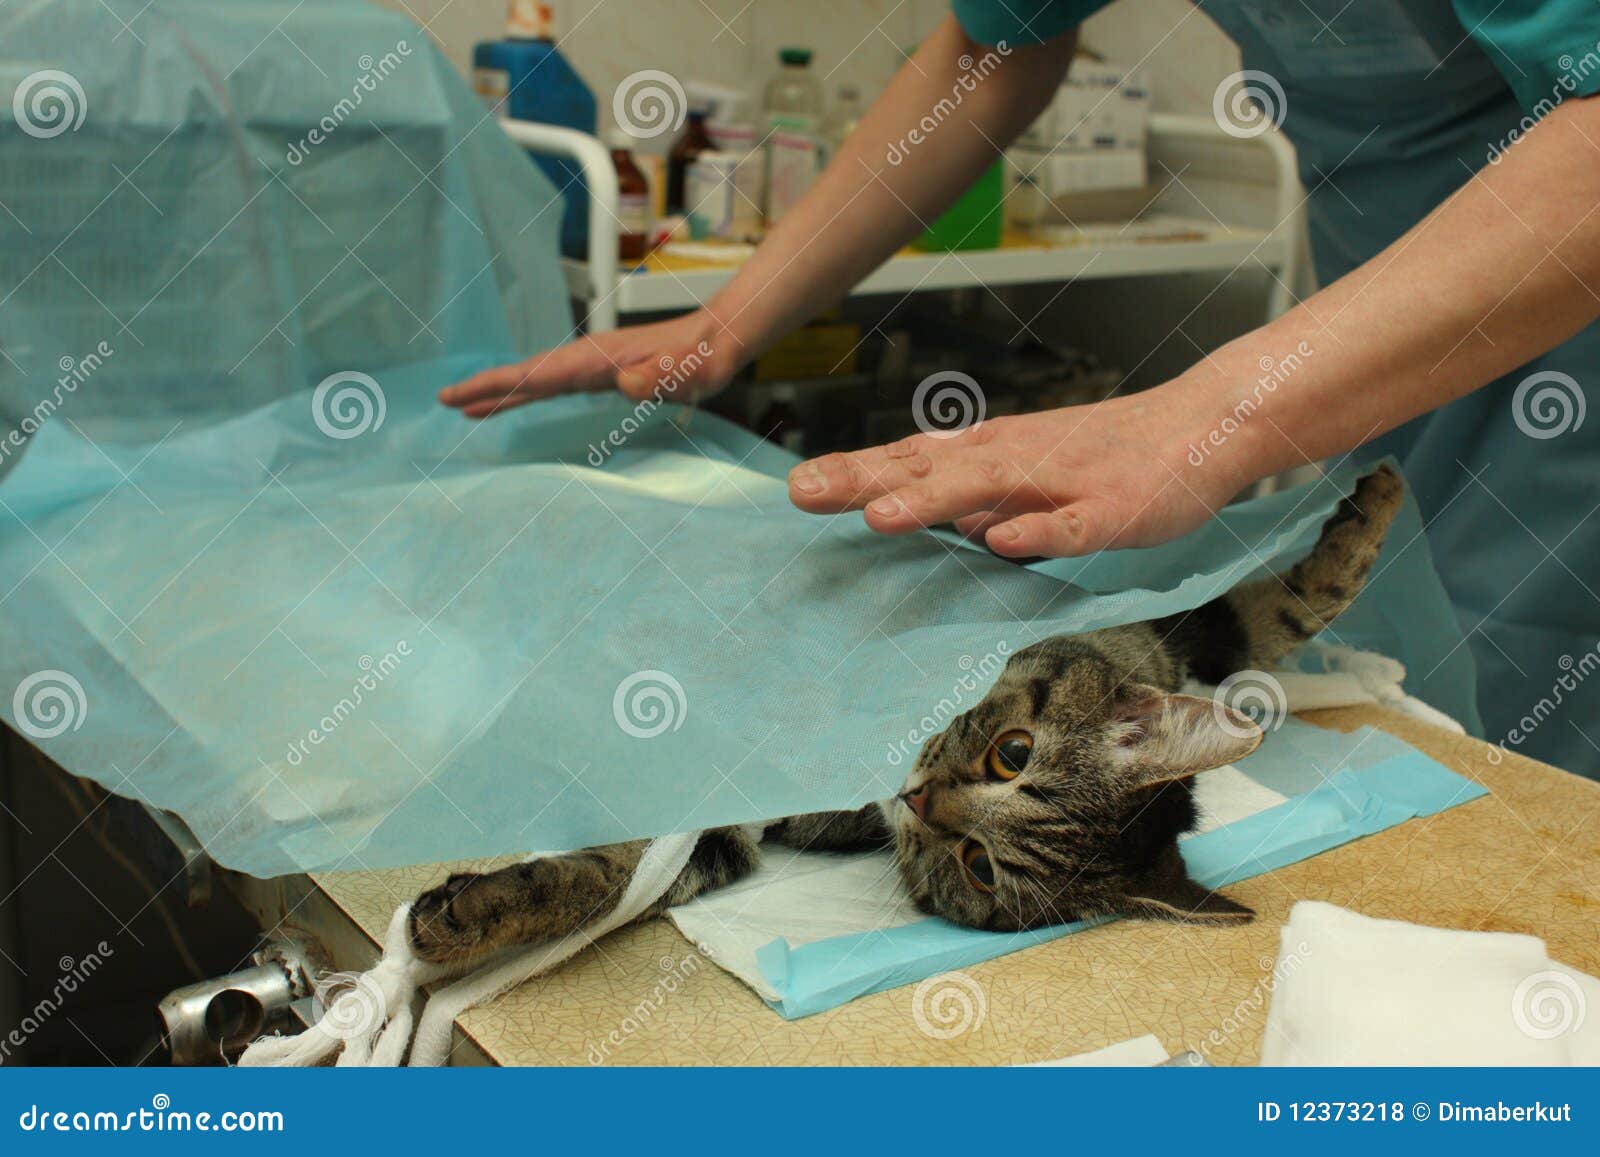 Перед стерилизацией кошки не кормить. Хирургическая стерилизация кошек.